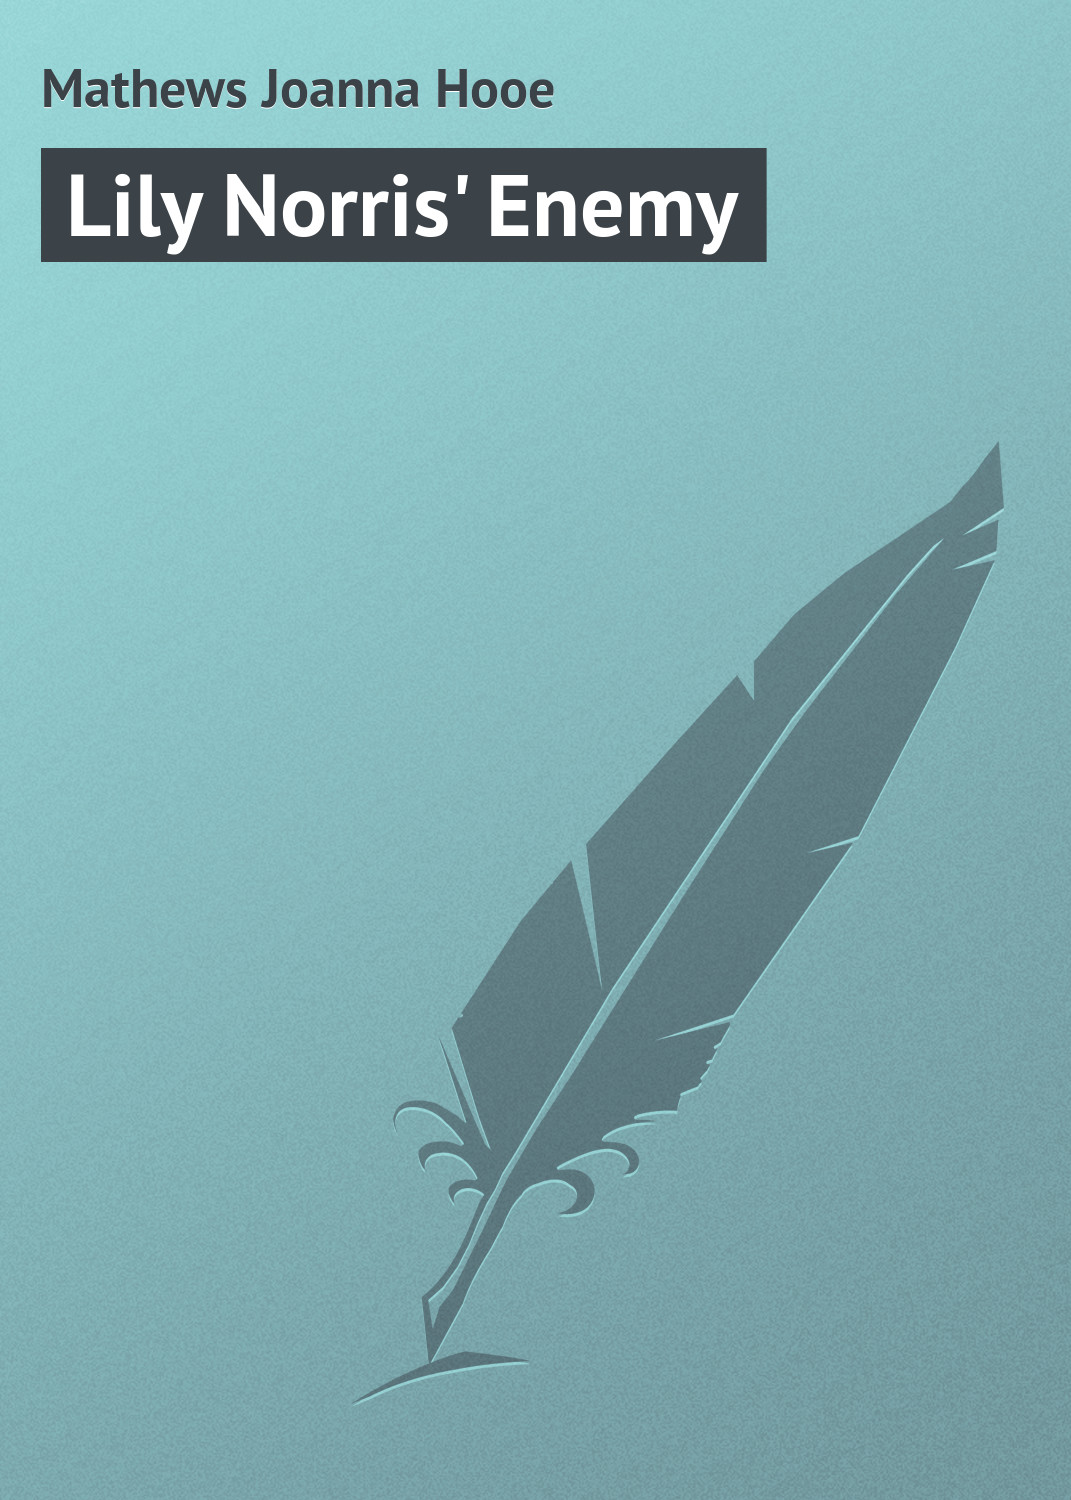 Книга Lily Norris' Enemy из серии , созданная Joanna Mathews, может относится к жанру Зарубежная классика. Стоимость электронной книги Lily Norris' Enemy с идентификатором 23163883 составляет 5.99 руб.